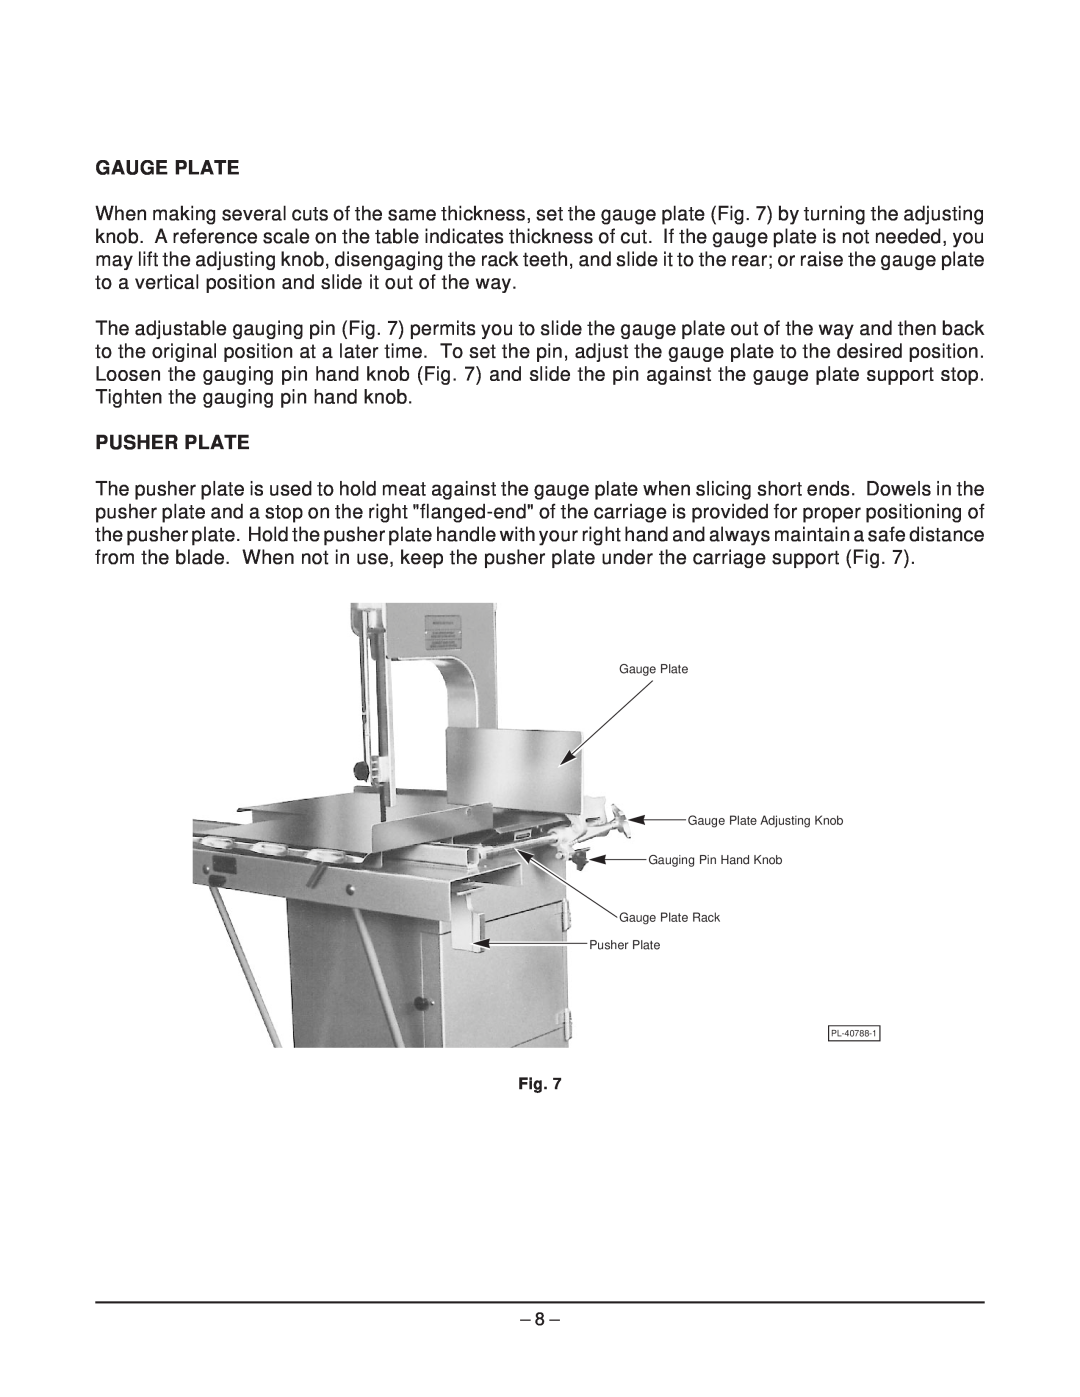 Hobart 5212F manual Gauge Plate Gauge Plate Adjusting Knob Gauging Pin Hand Knob, Gauge Plate Rack Pusher Plate 